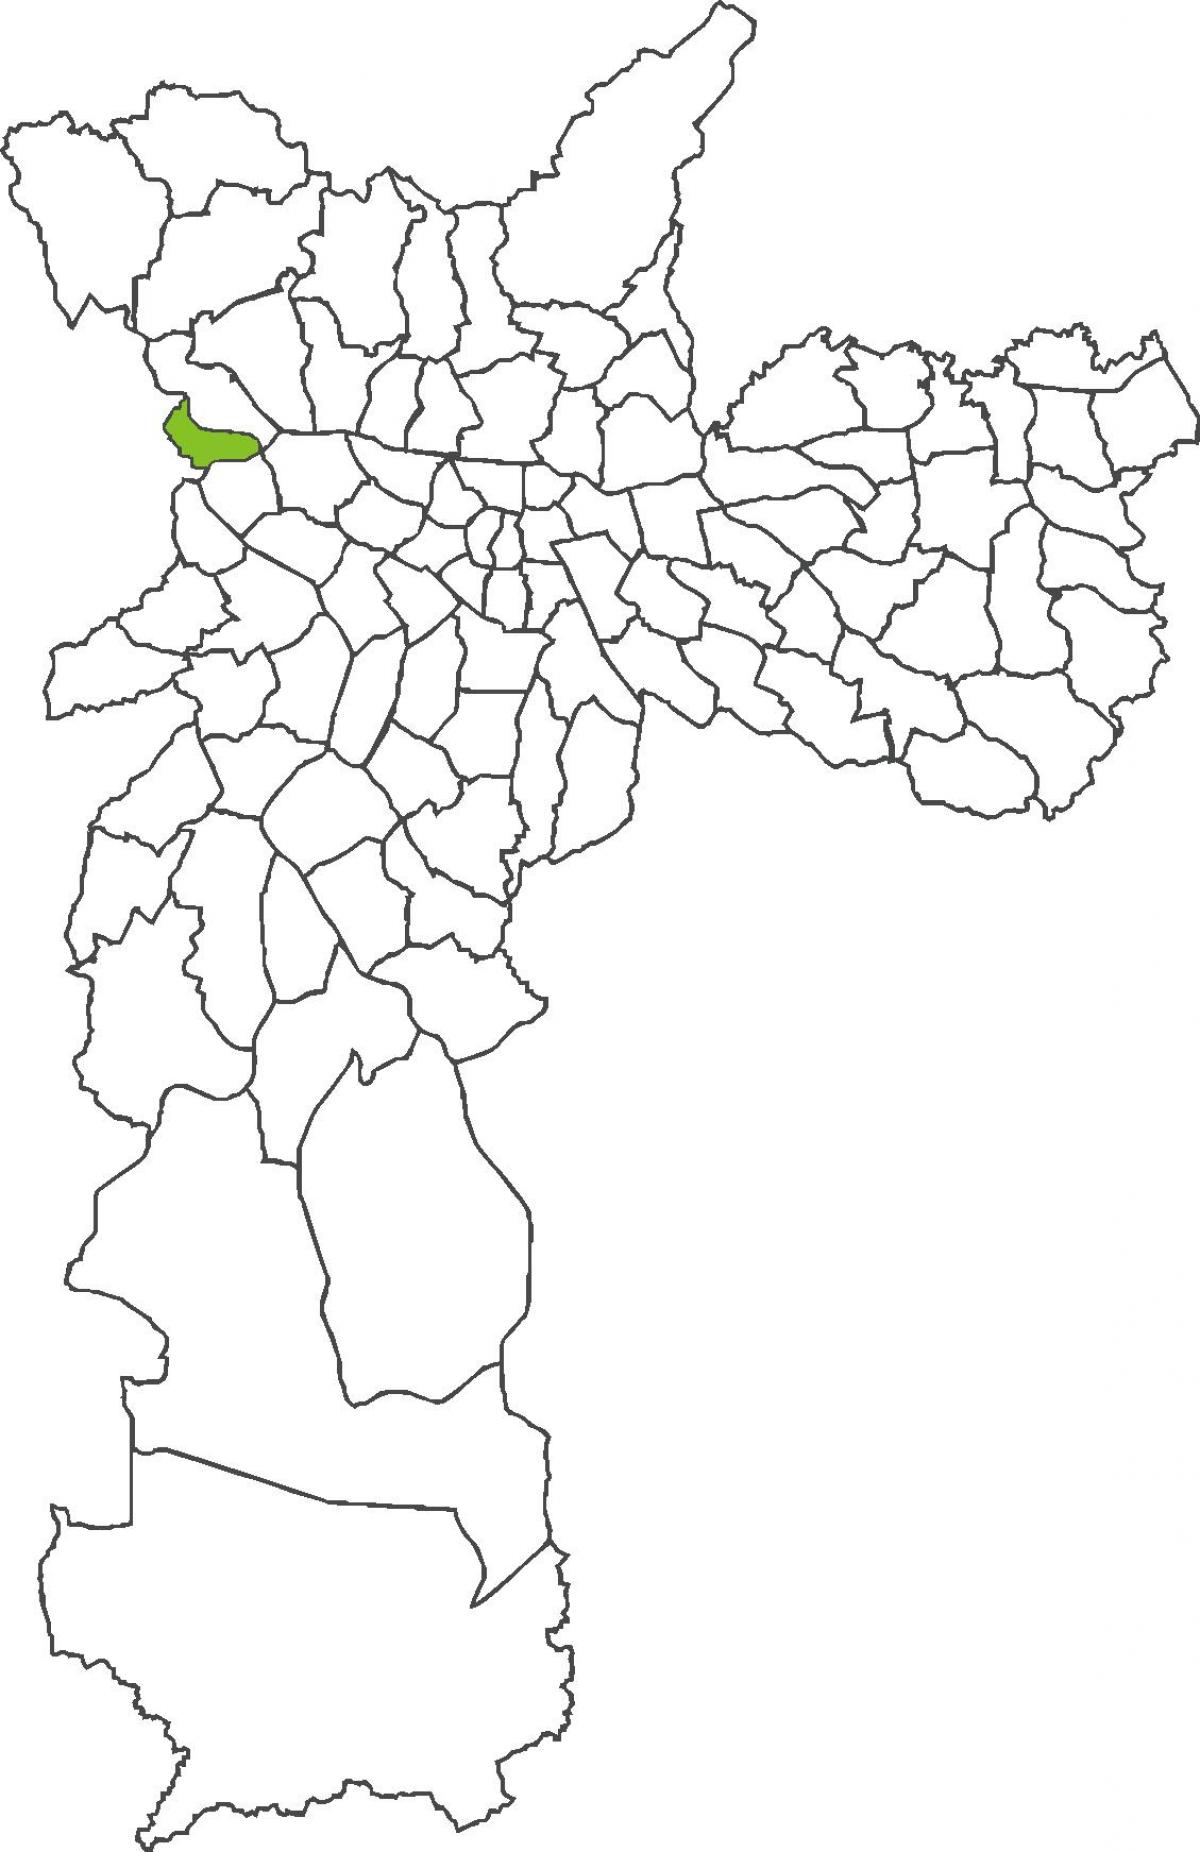 Žemėlapis Jaguara rajonas